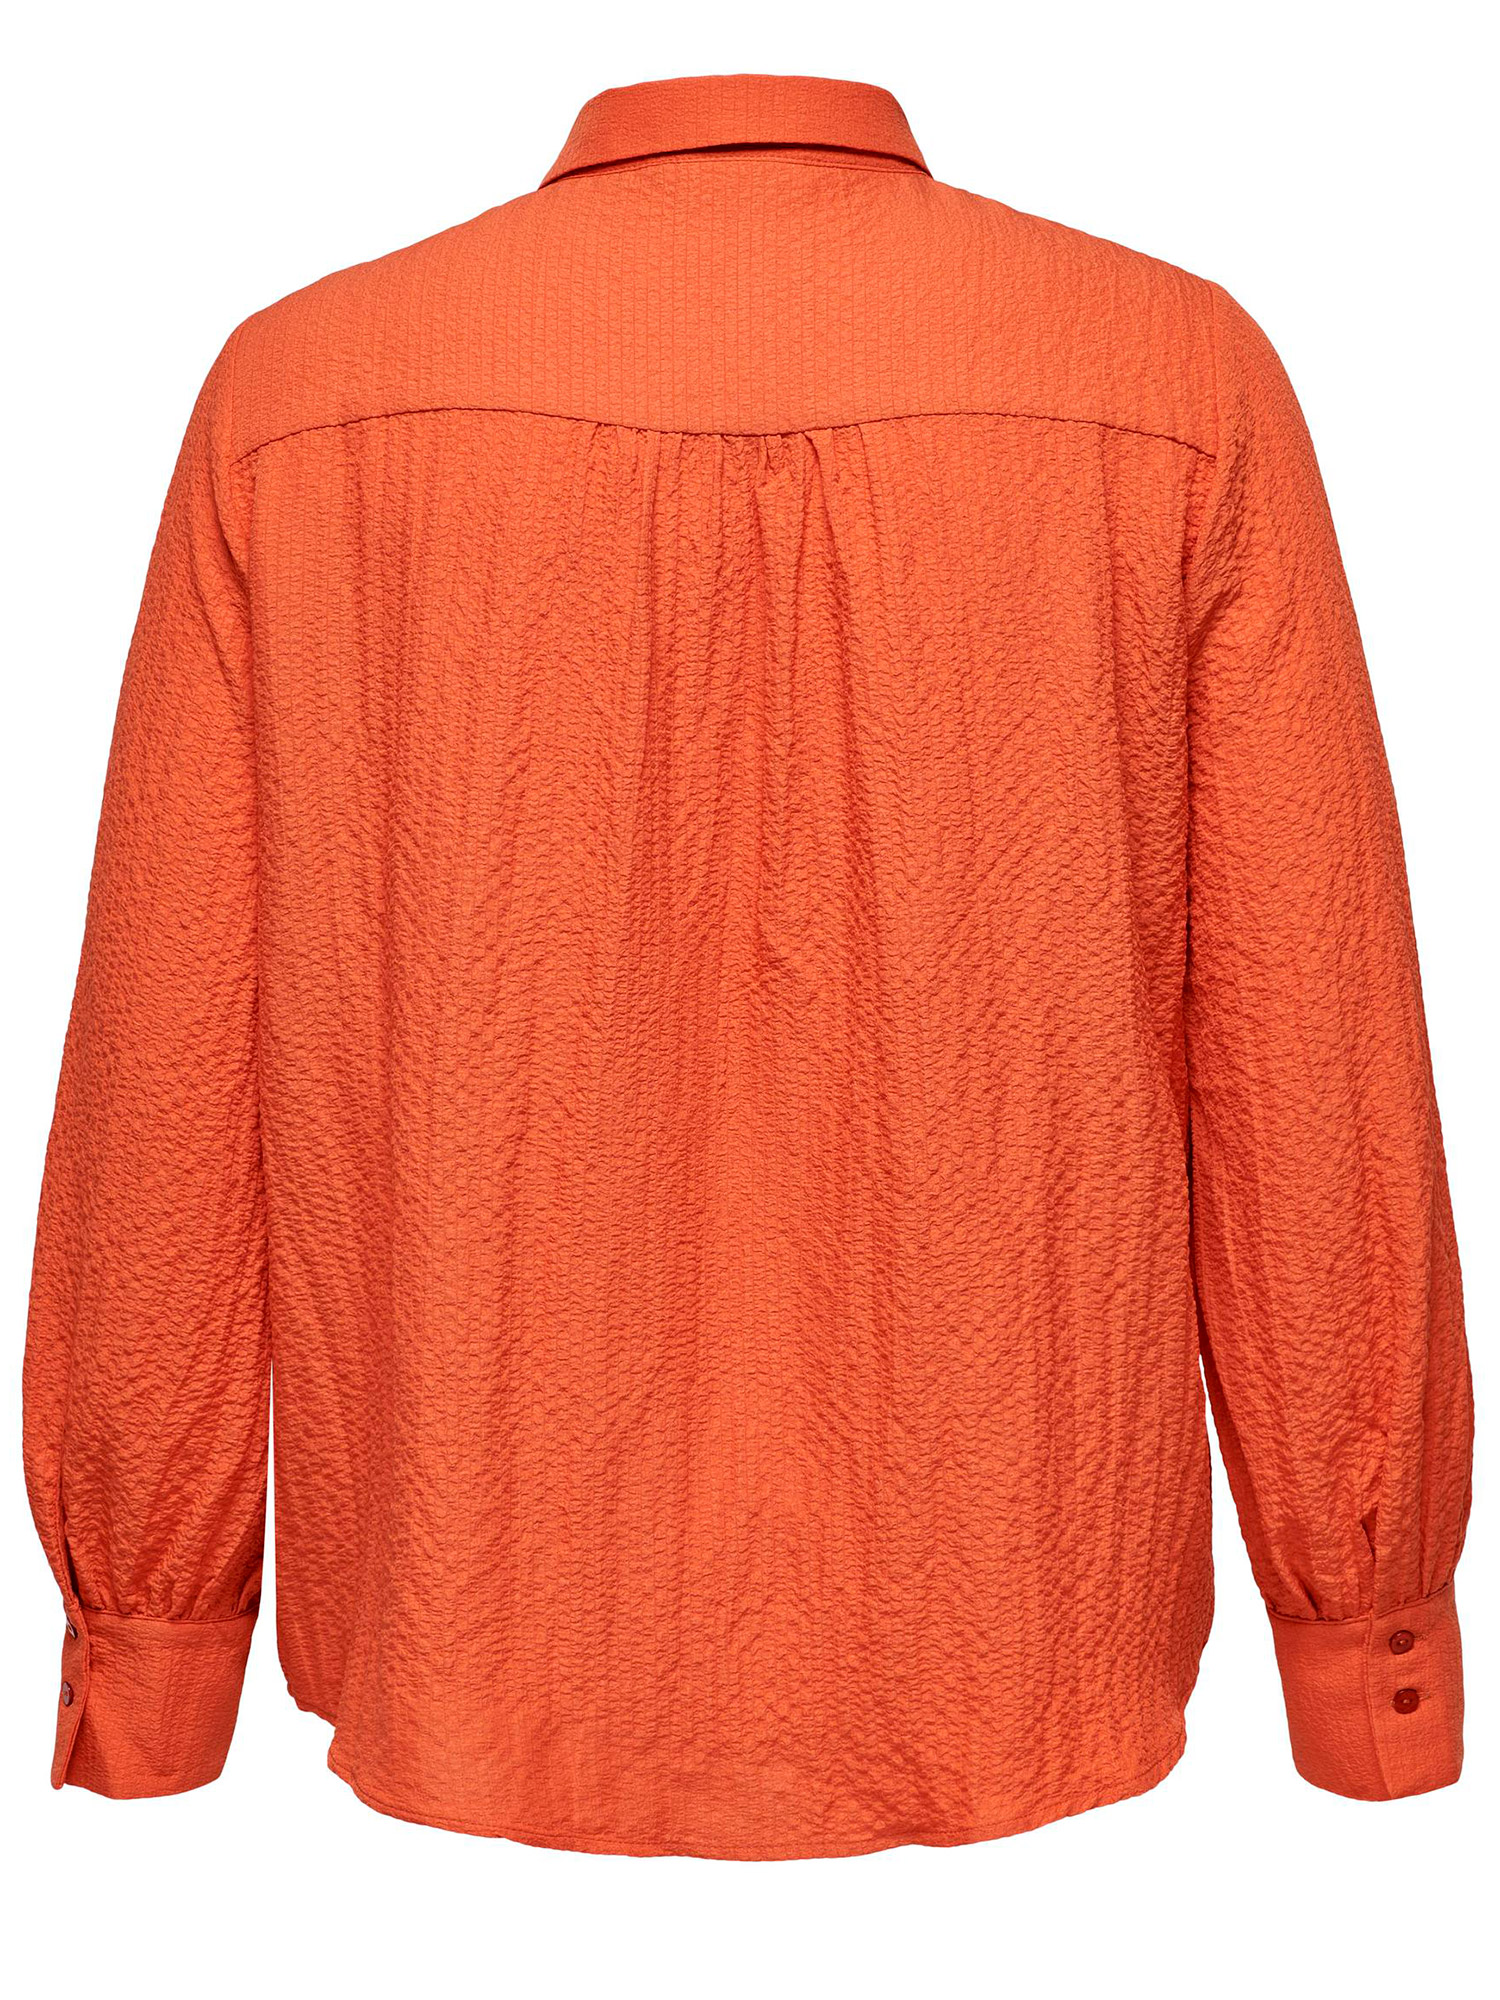 ELVIRO - Oransje skjorte med struktur fra Only Carmakoma